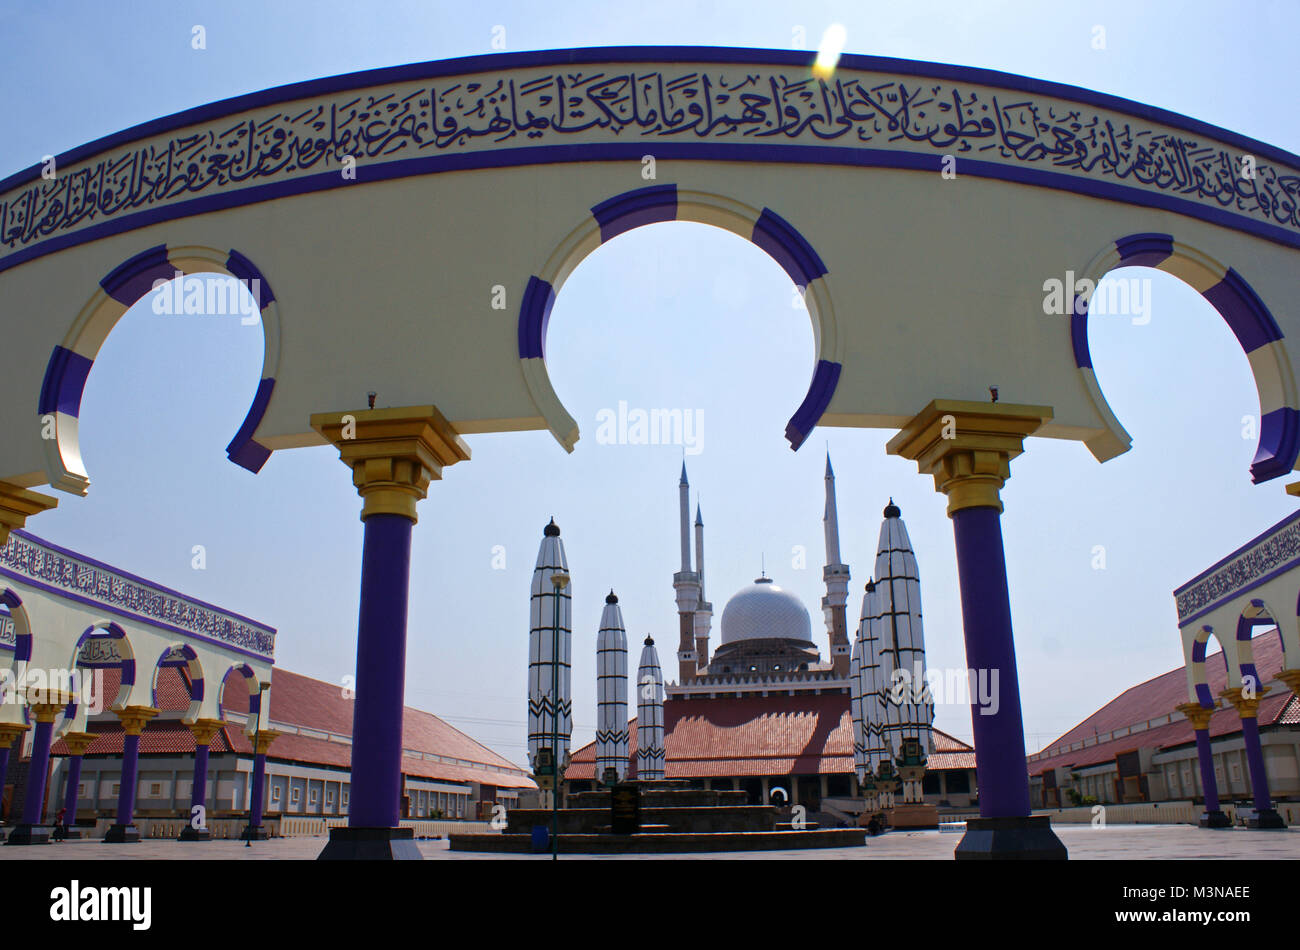 Masjid Agung Jawa Tengah, Semarang, Central Java, Indonesia Stock Photo